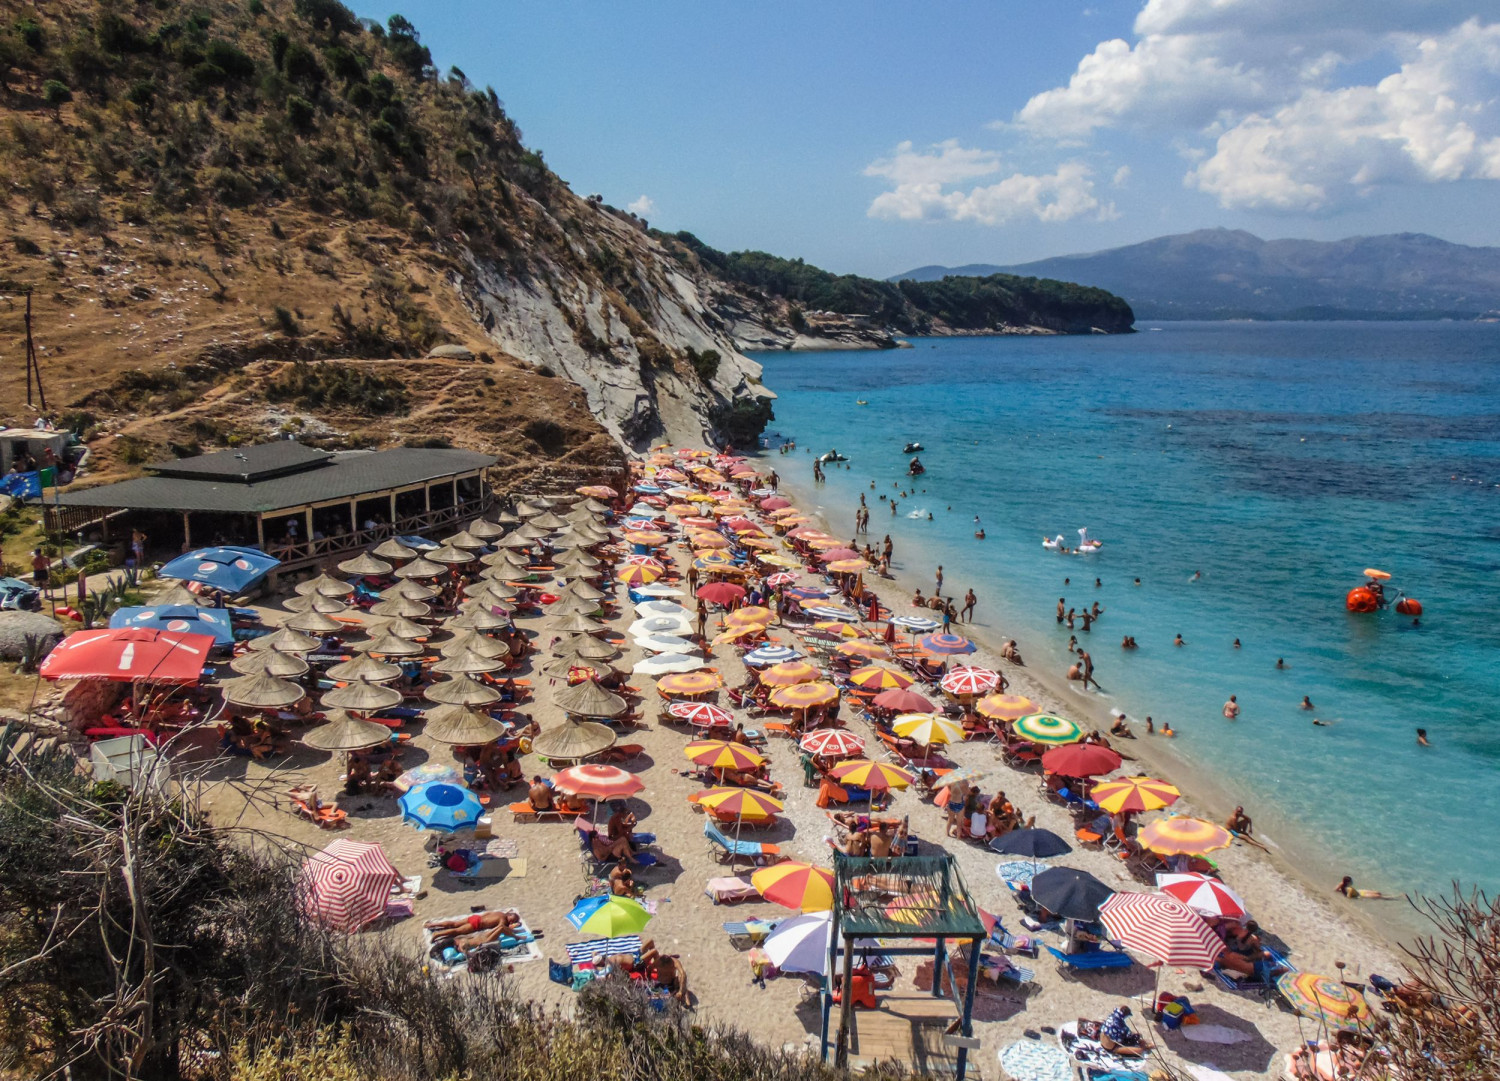 В Турция и Гърция реват - българите вече си имат ново любимо място за плаж